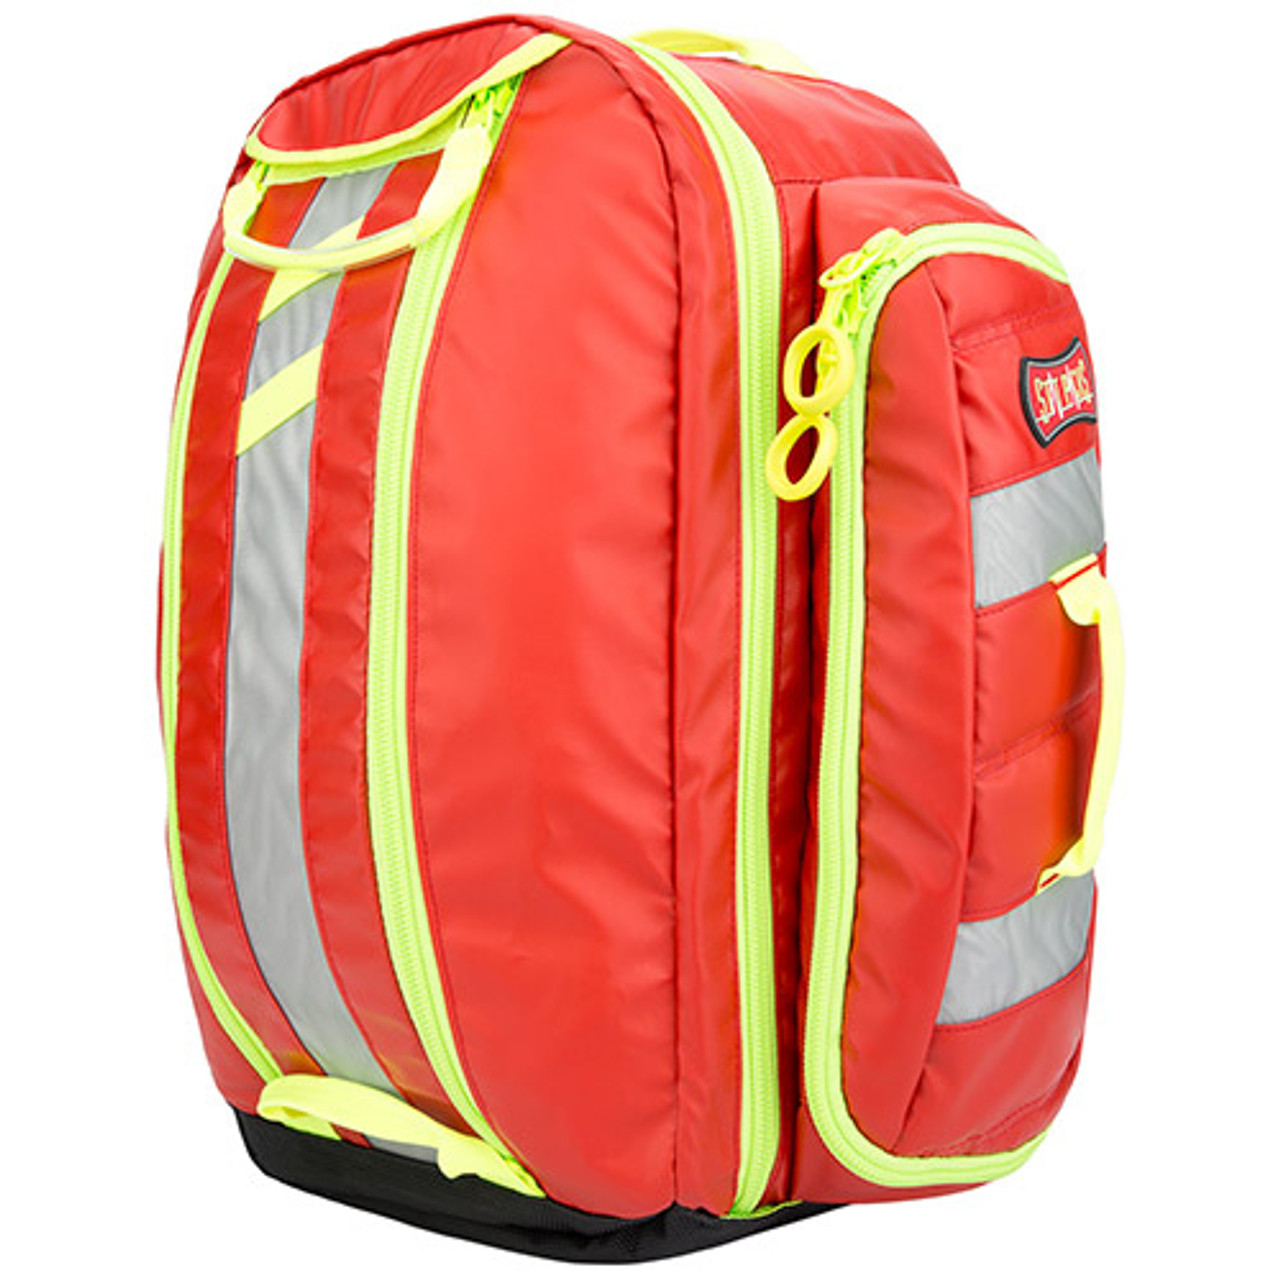 StatPacks G3 Load N' Go Backpack - Red or Black - Medical Warehouse